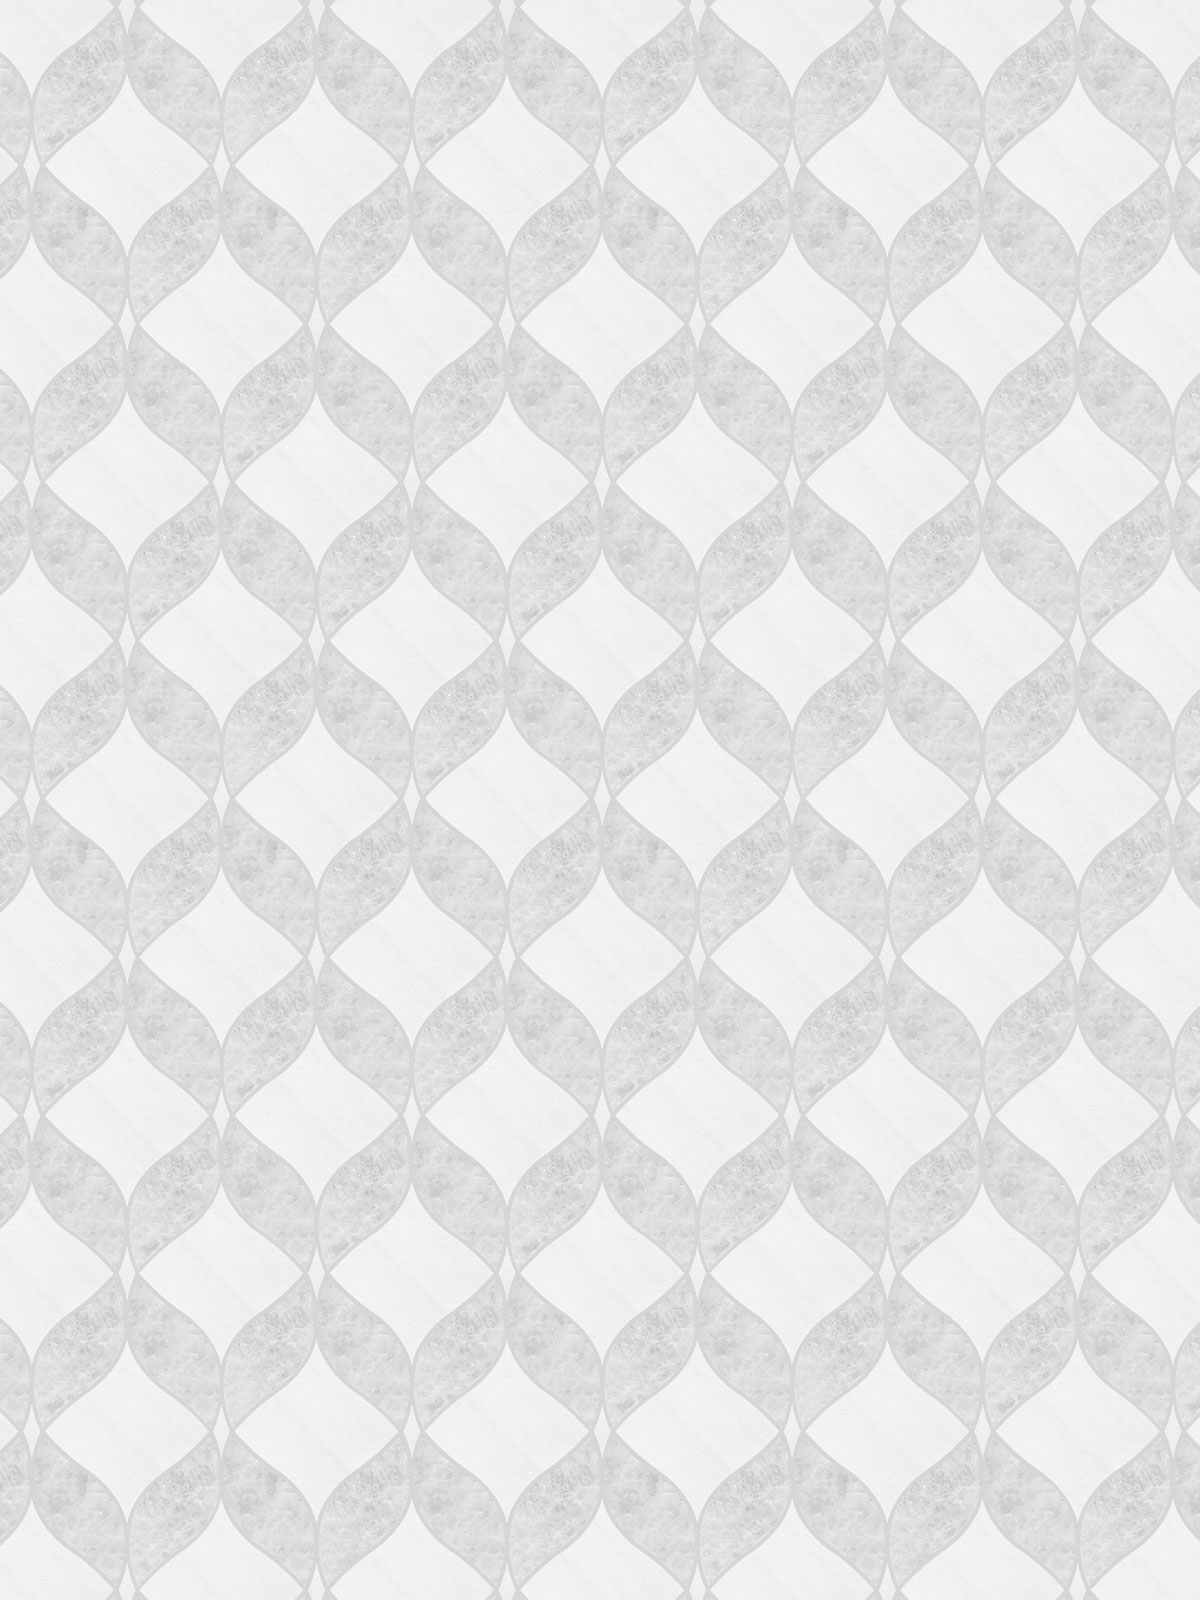 White Gray Waterjet Mosaic Kitchen Backsplash Tile BA6317 7